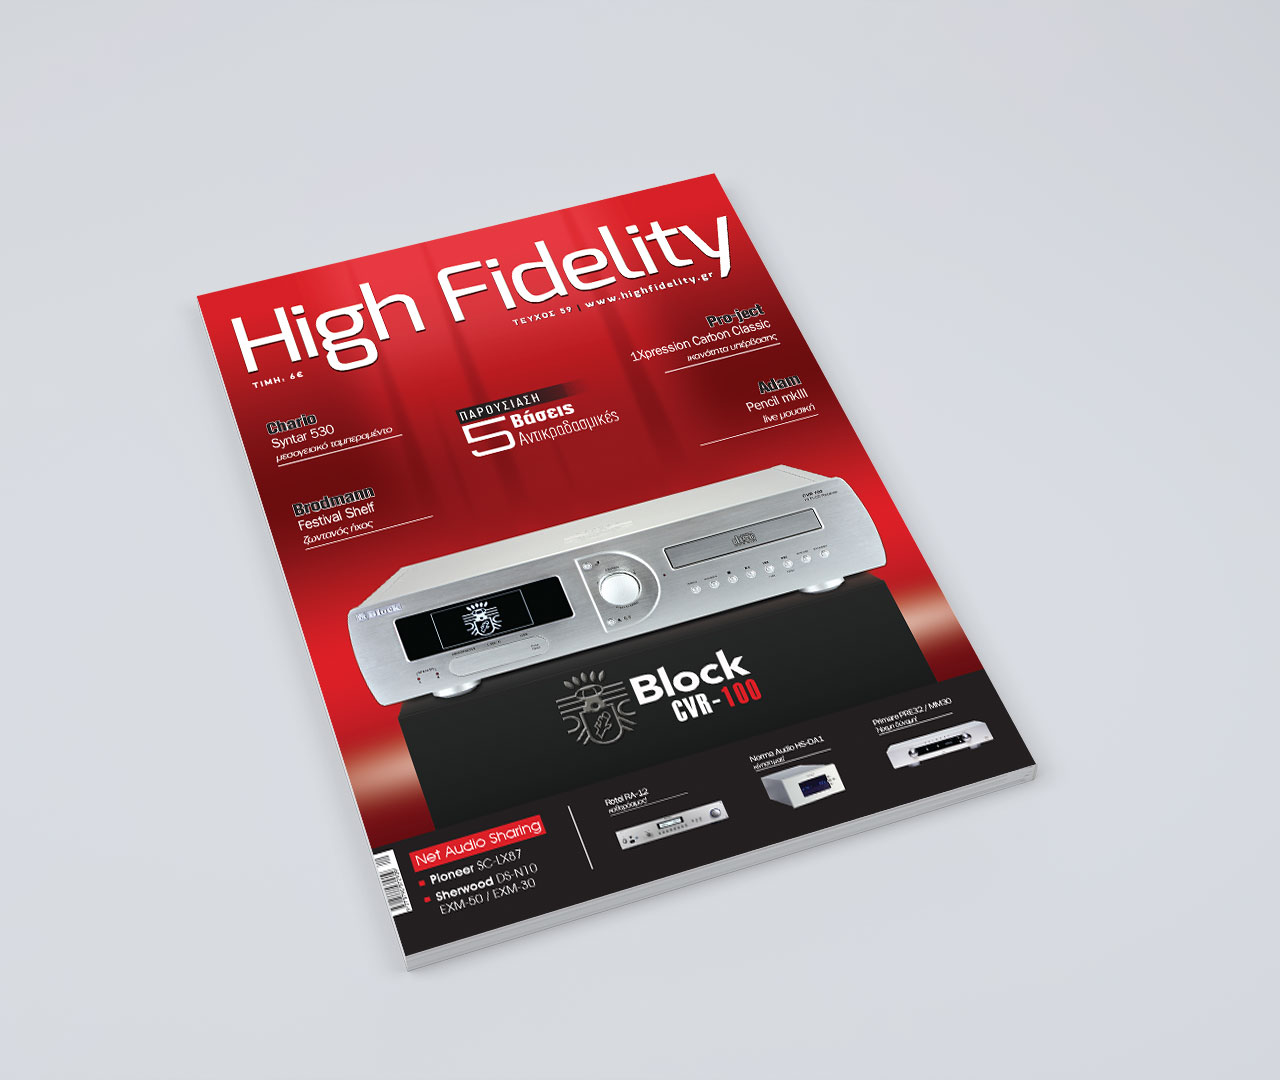 HighFidelity Magazine